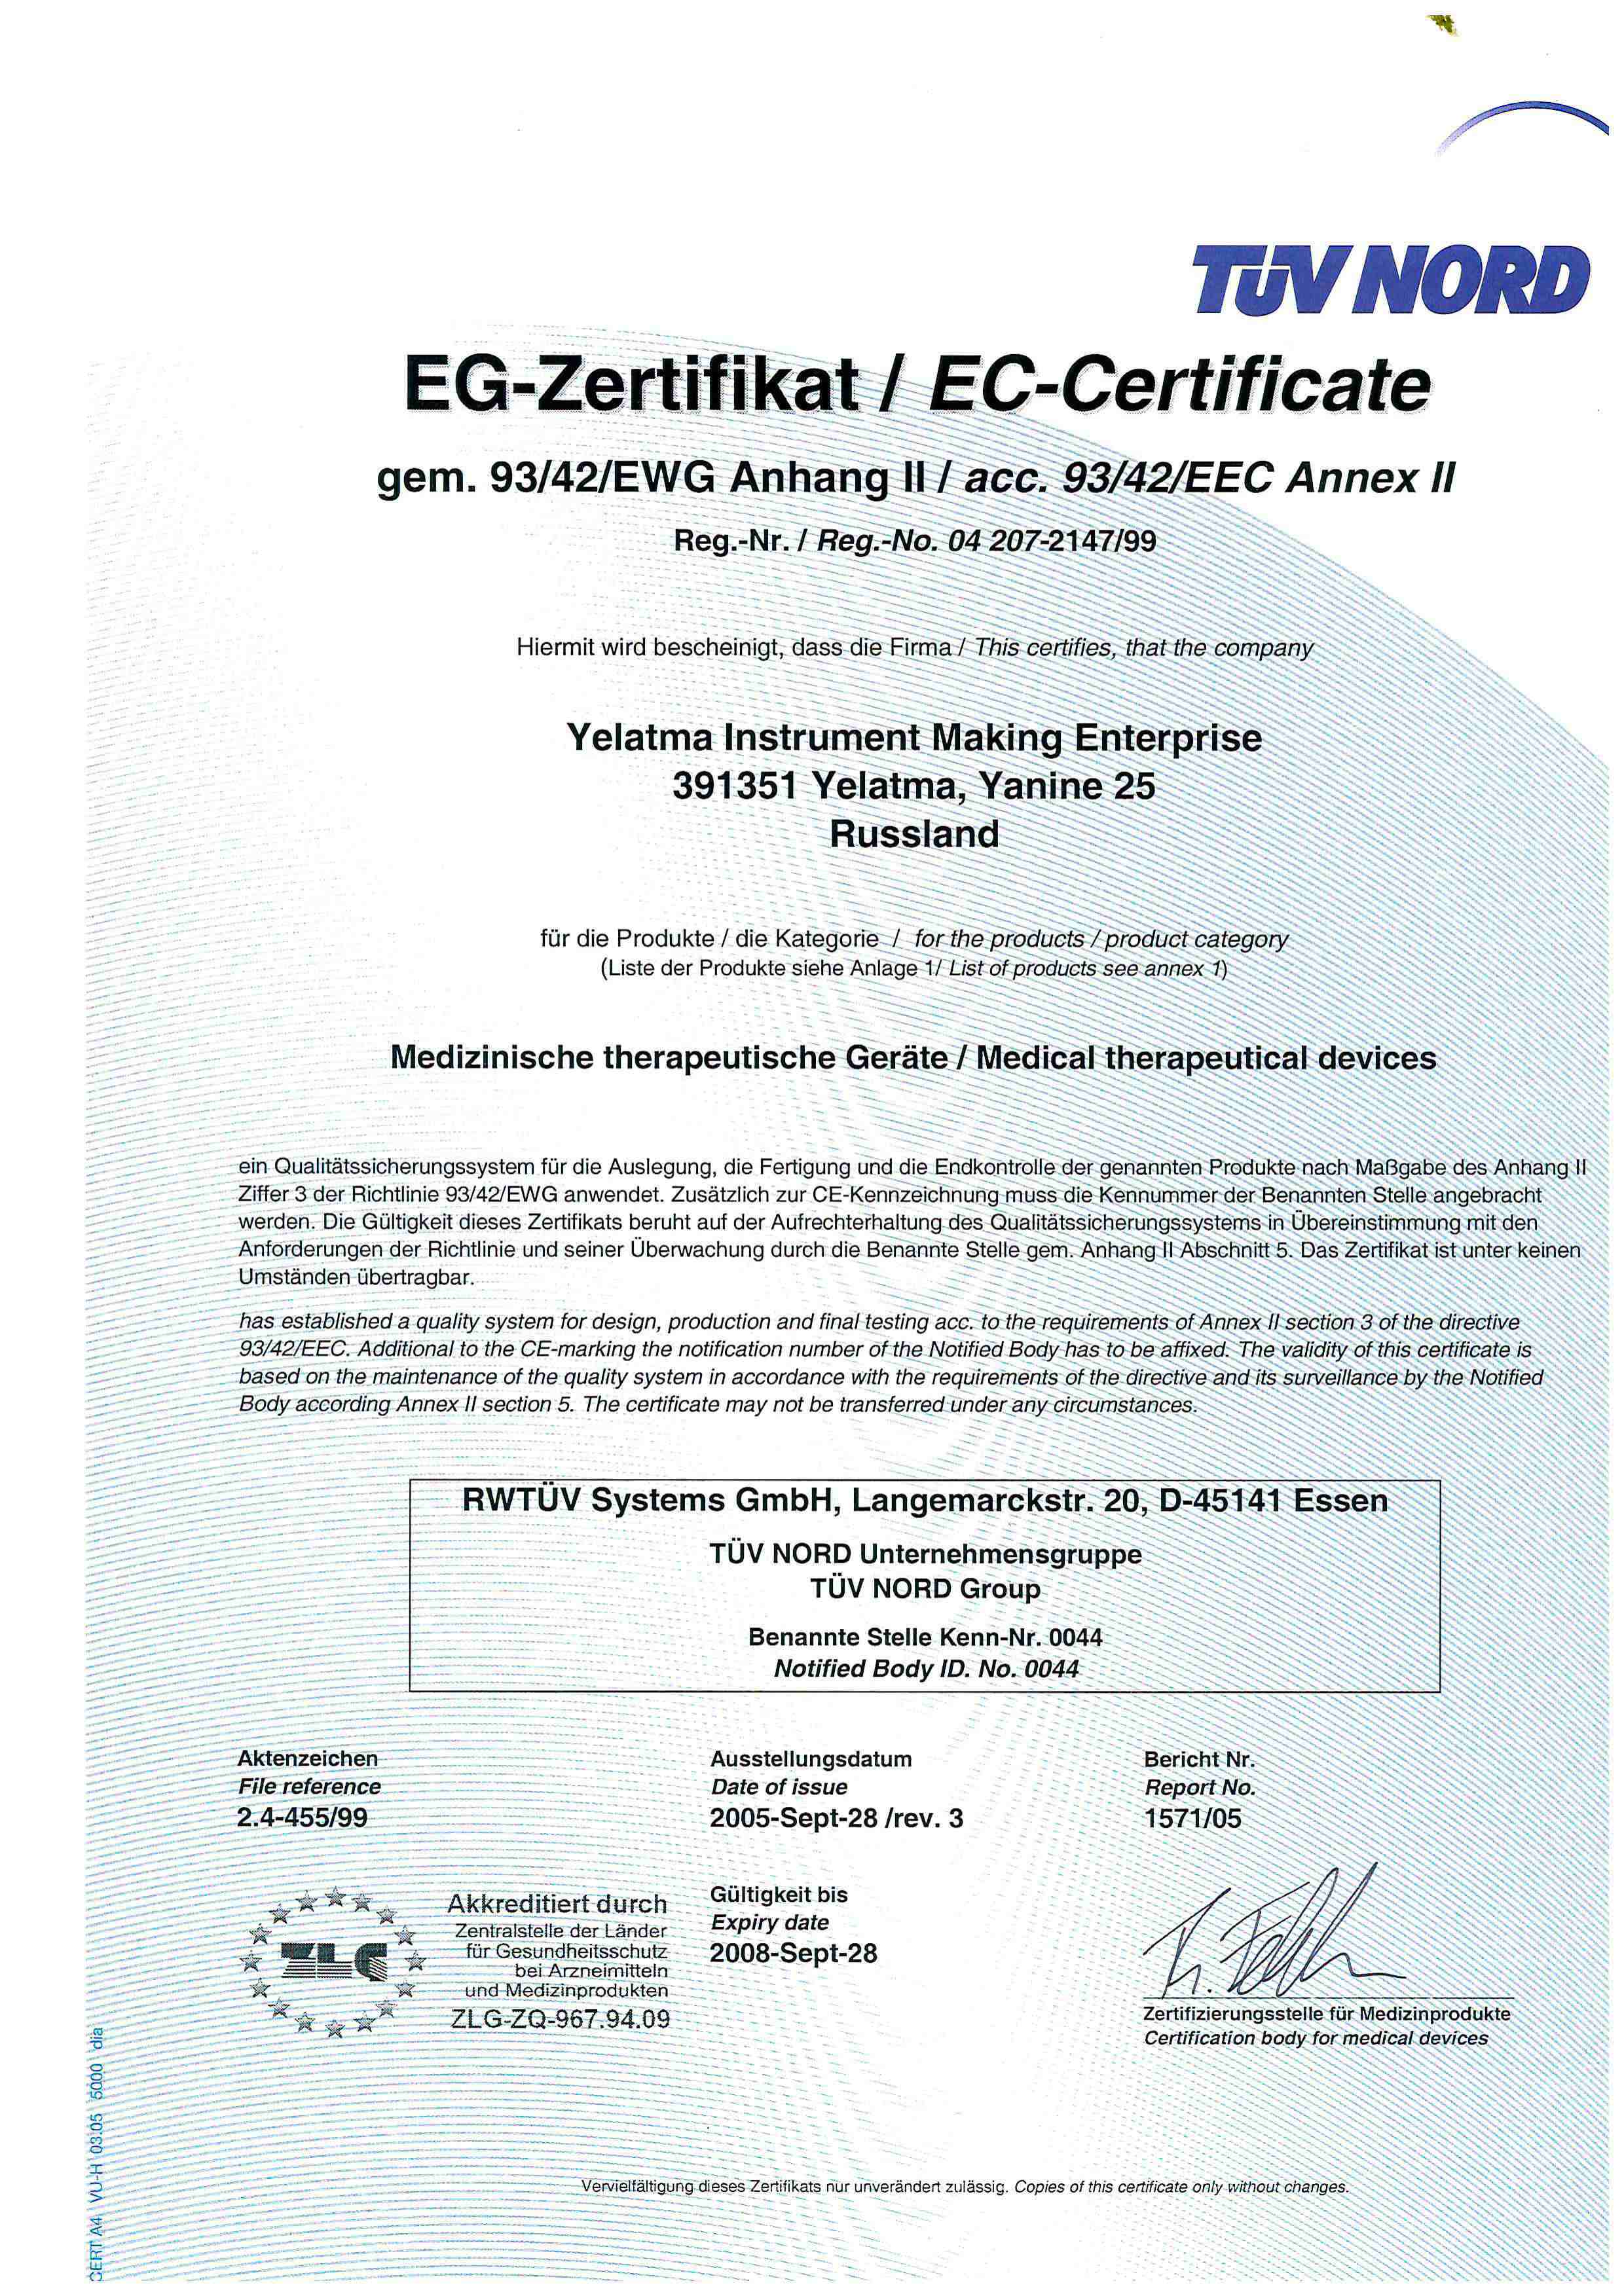 2005 жылғы MDD сертификаты